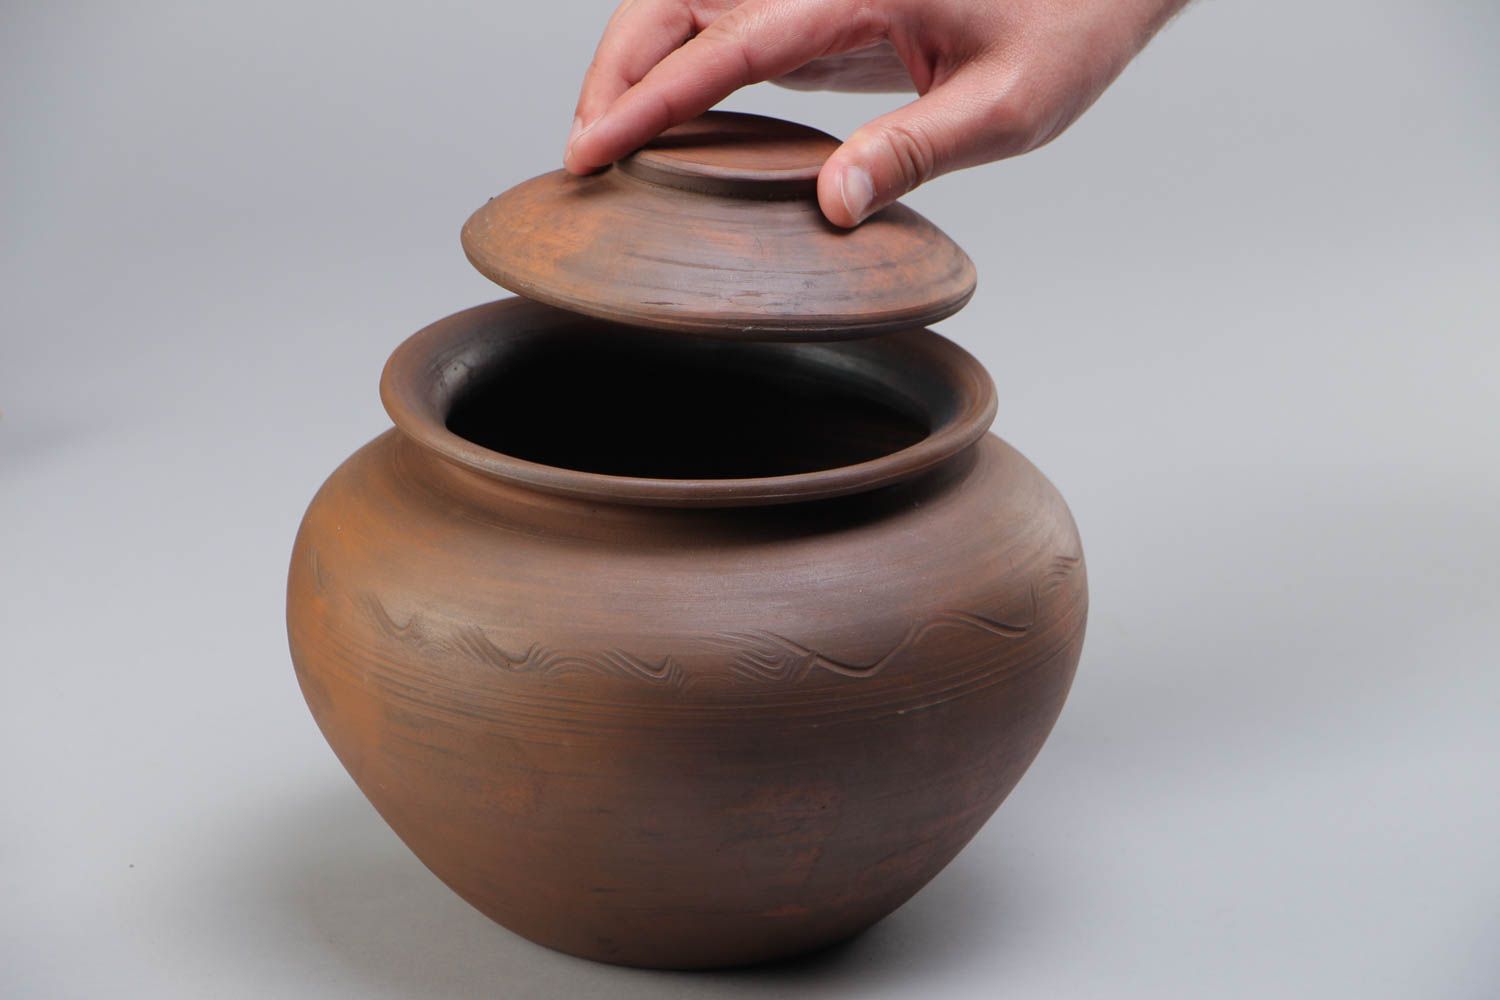 Keramik Schmortopf für Backen nicht groß in Braun mit Deckel 2 L Handarbeit  foto 5